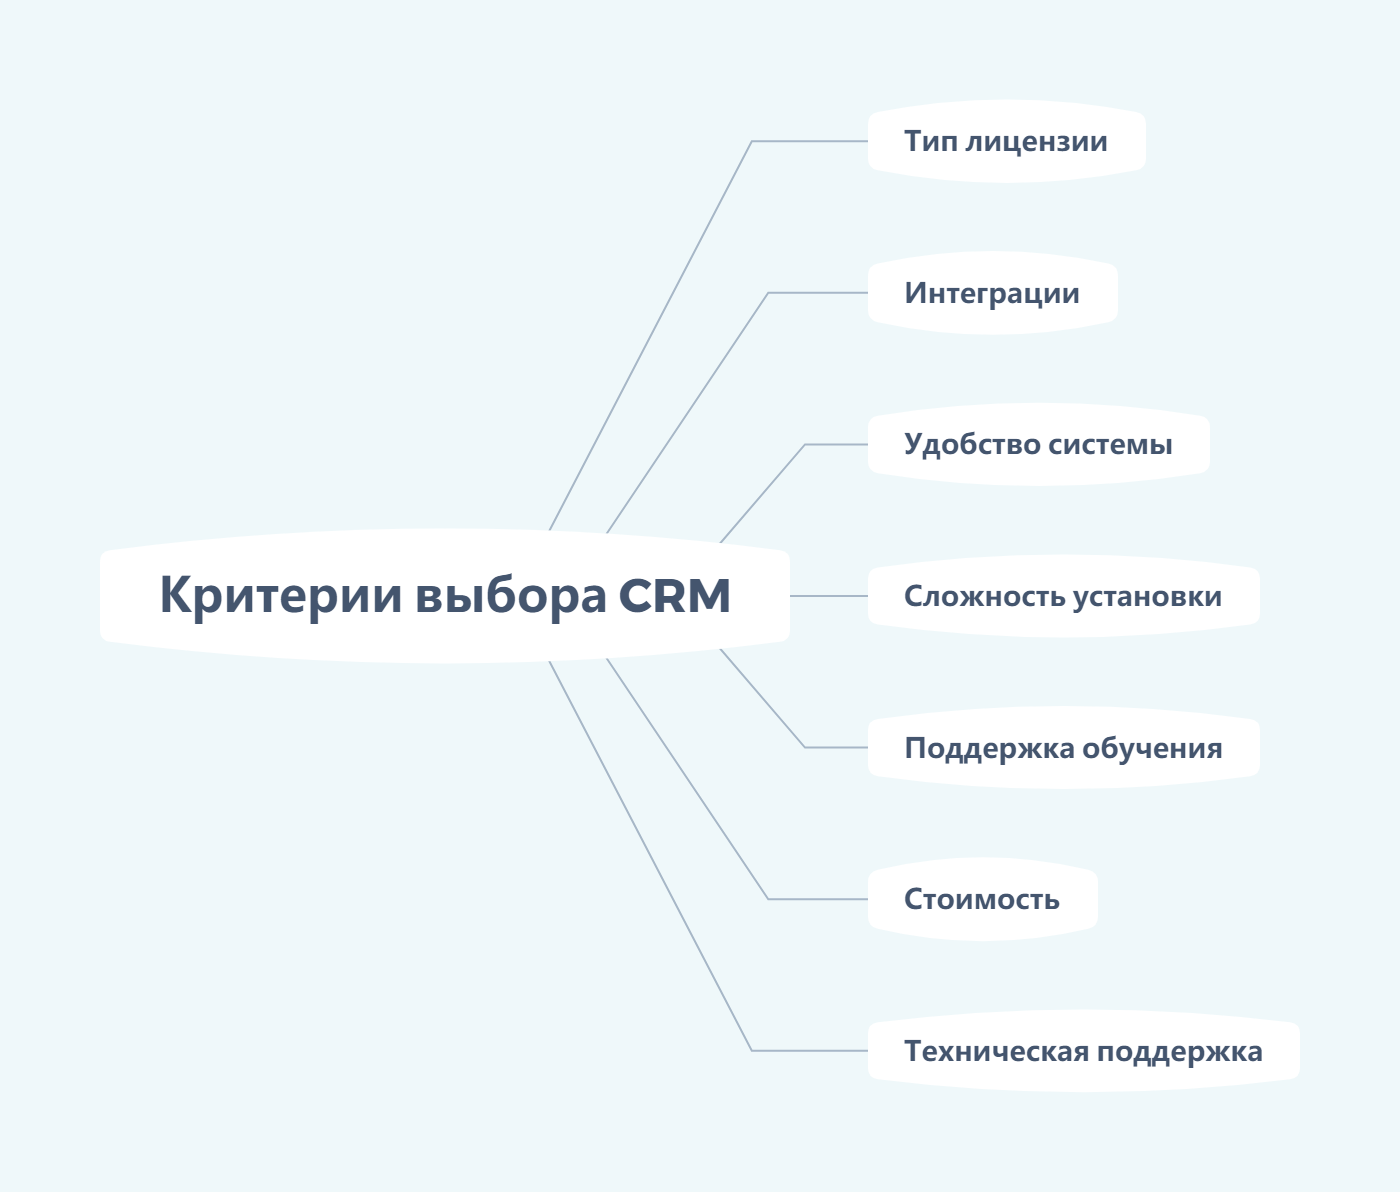 Критерии выбора CRM